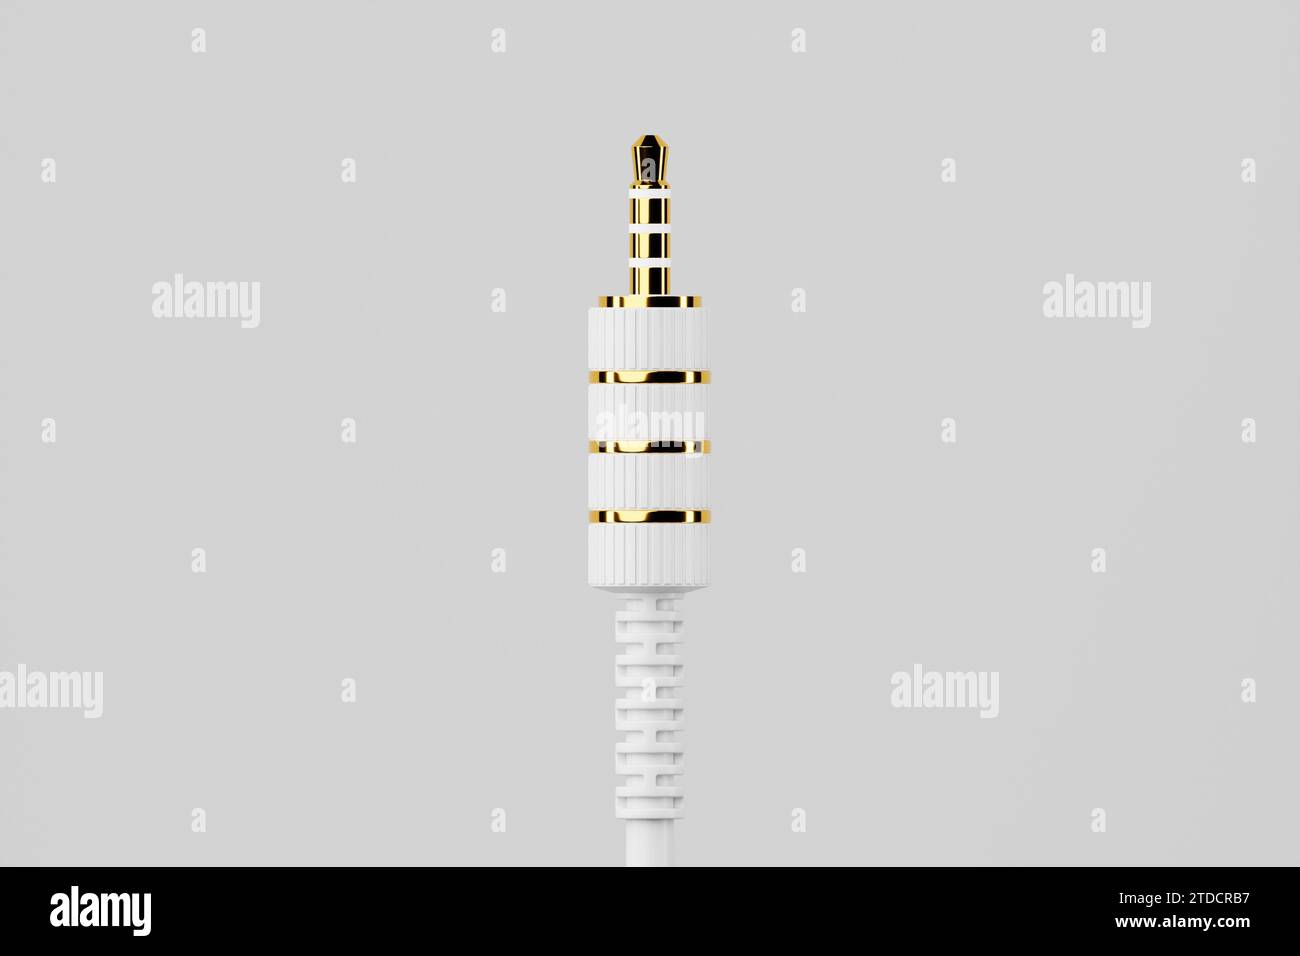 3.5 mm audio mini jack plug  isolated on a  white  background.  3d  illustration Stock Photo